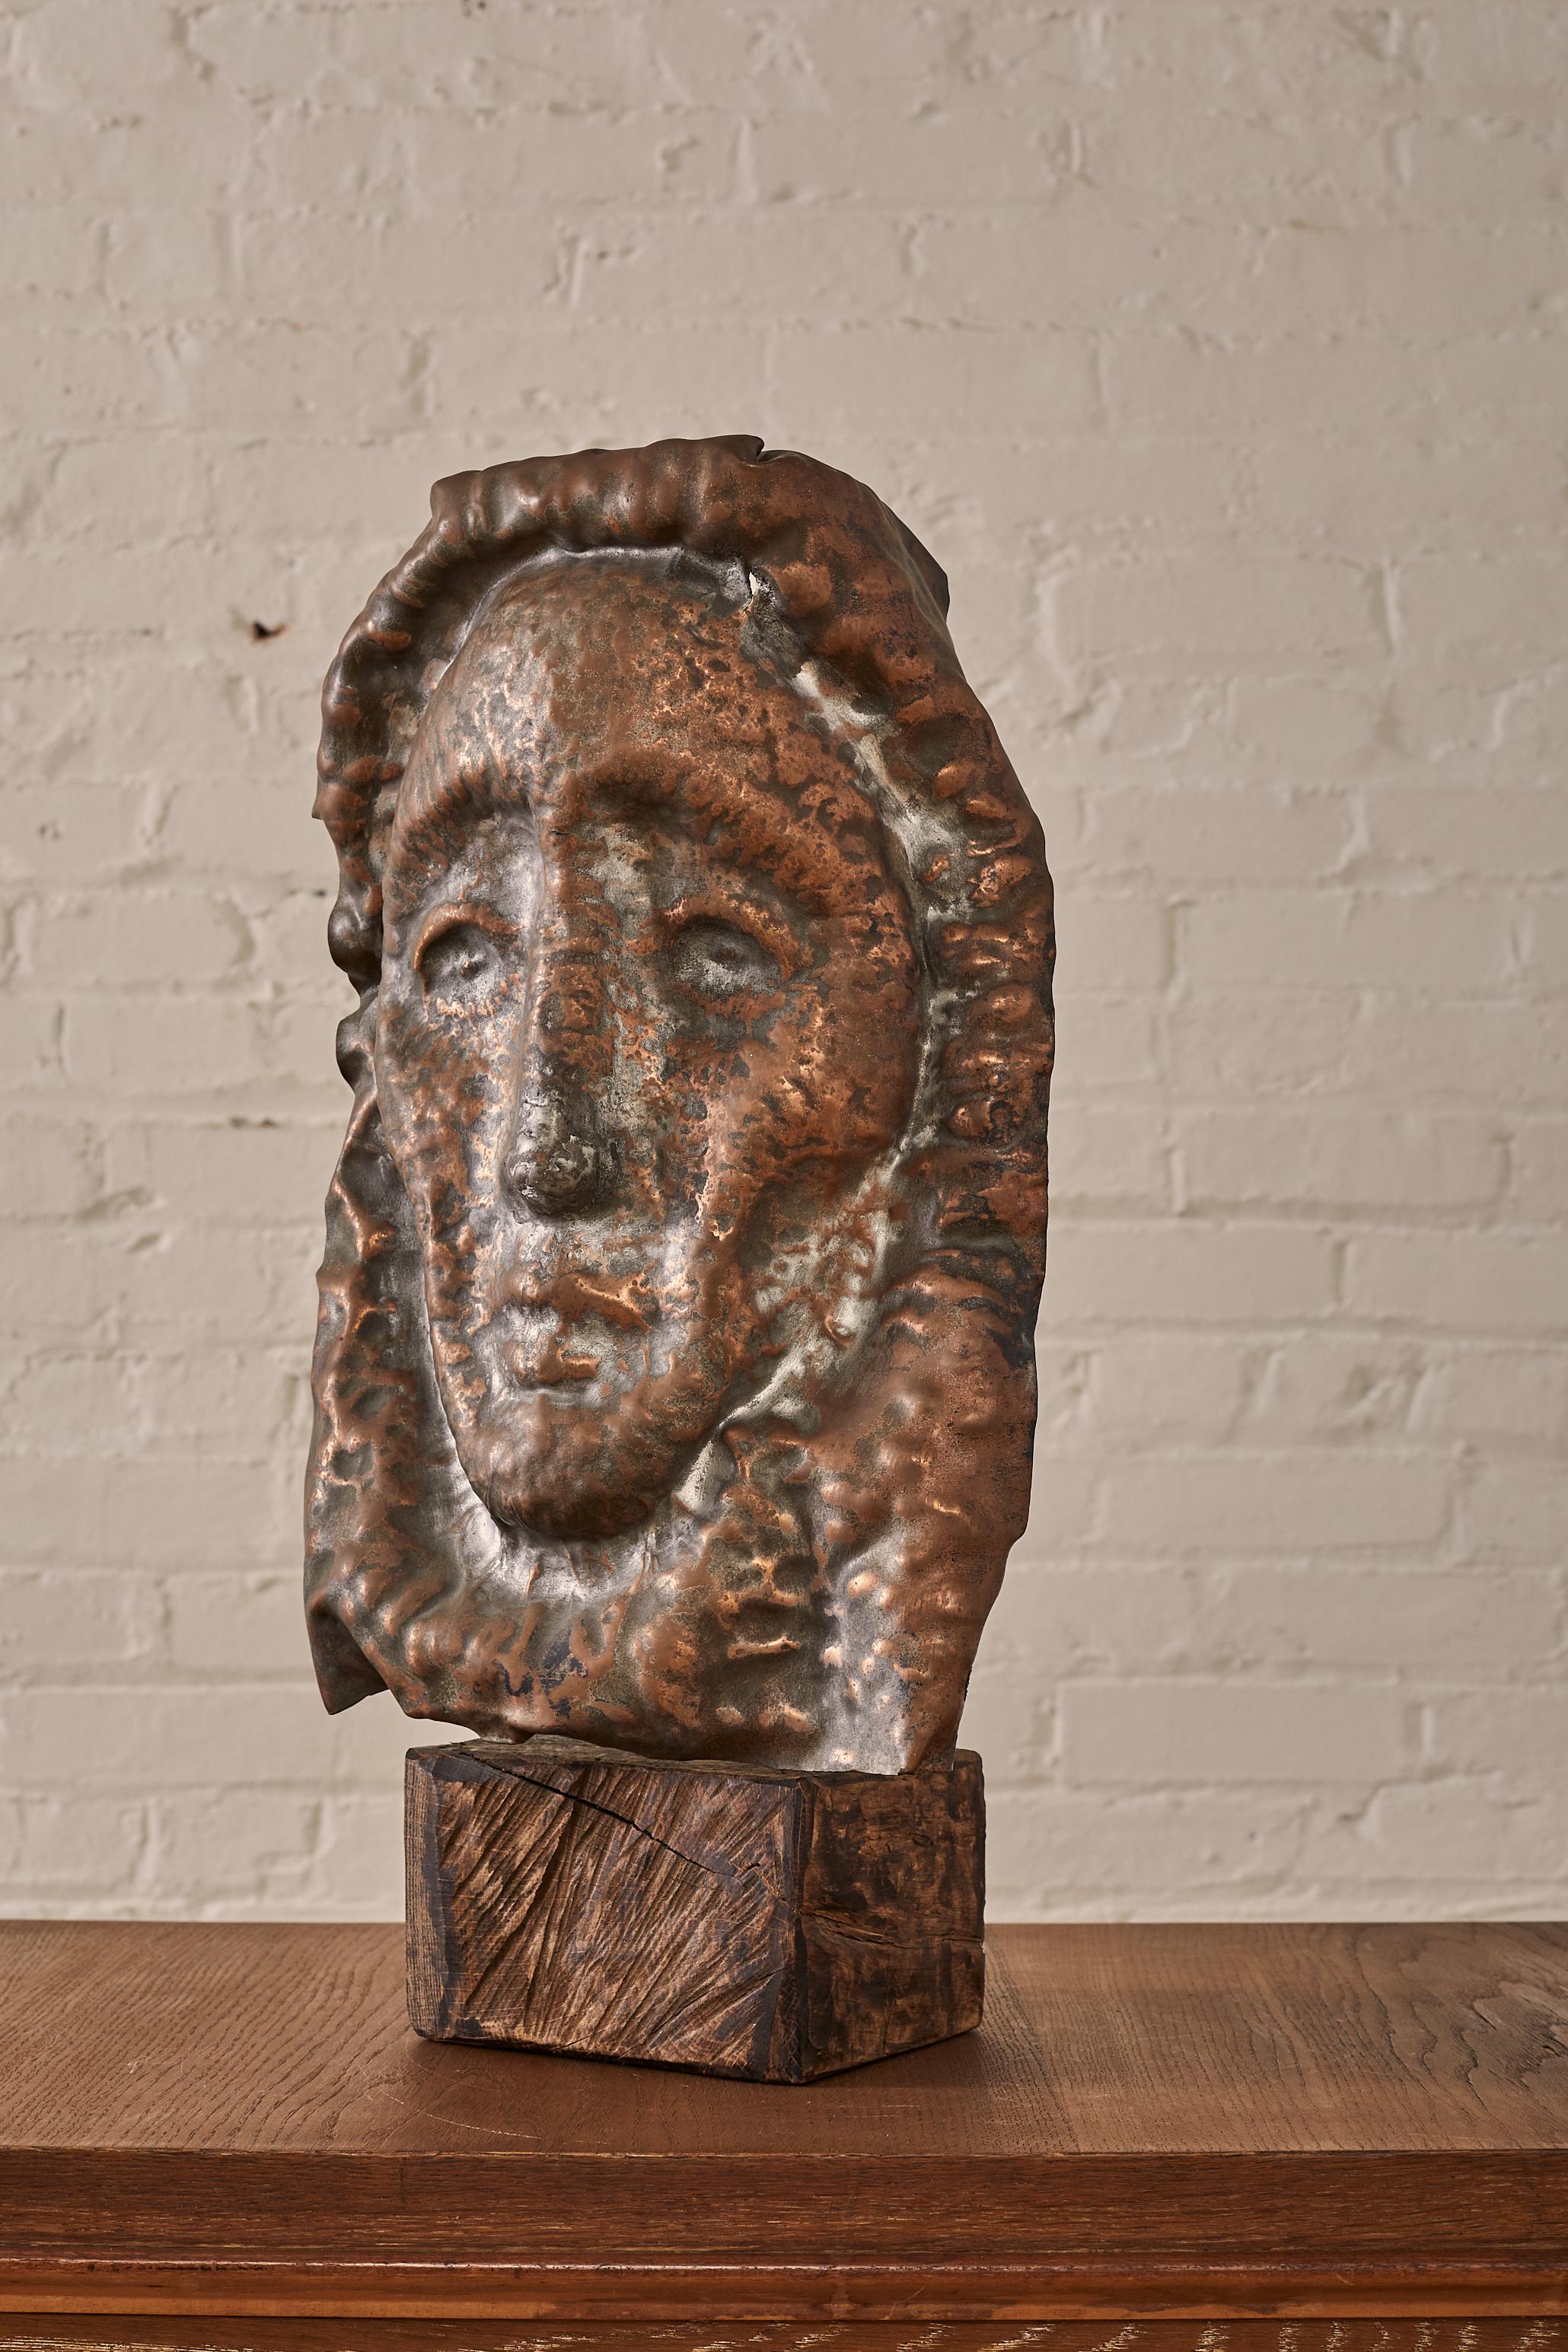 Sculpture martelée et patinée de Waylande Gregory sur une base en bois brut.

